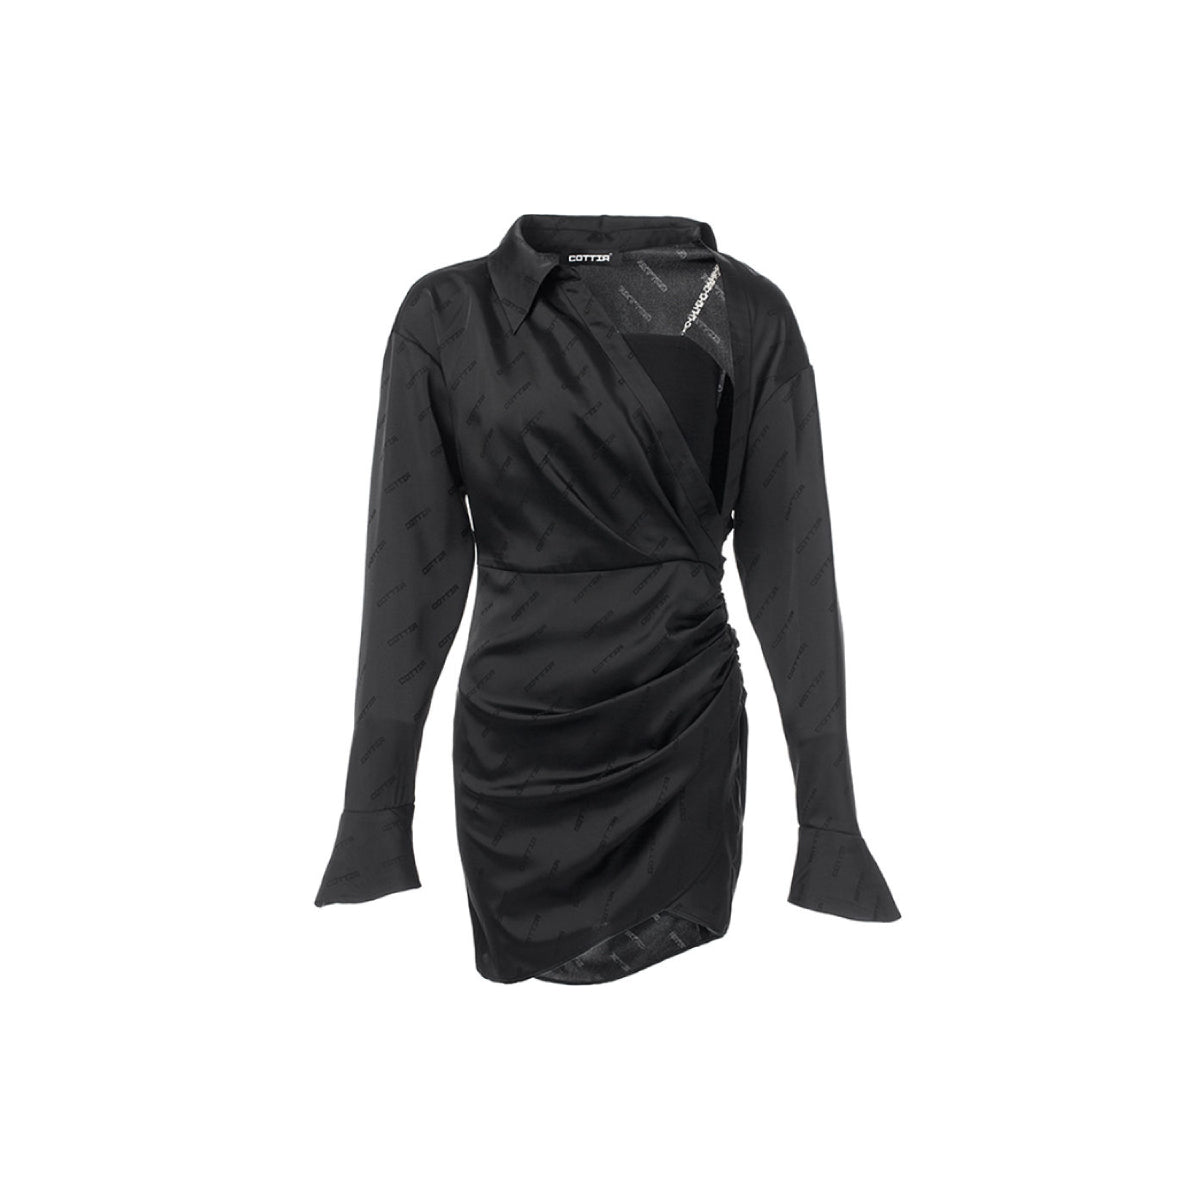 Cottia Jacquard Chain Tube Dress Black